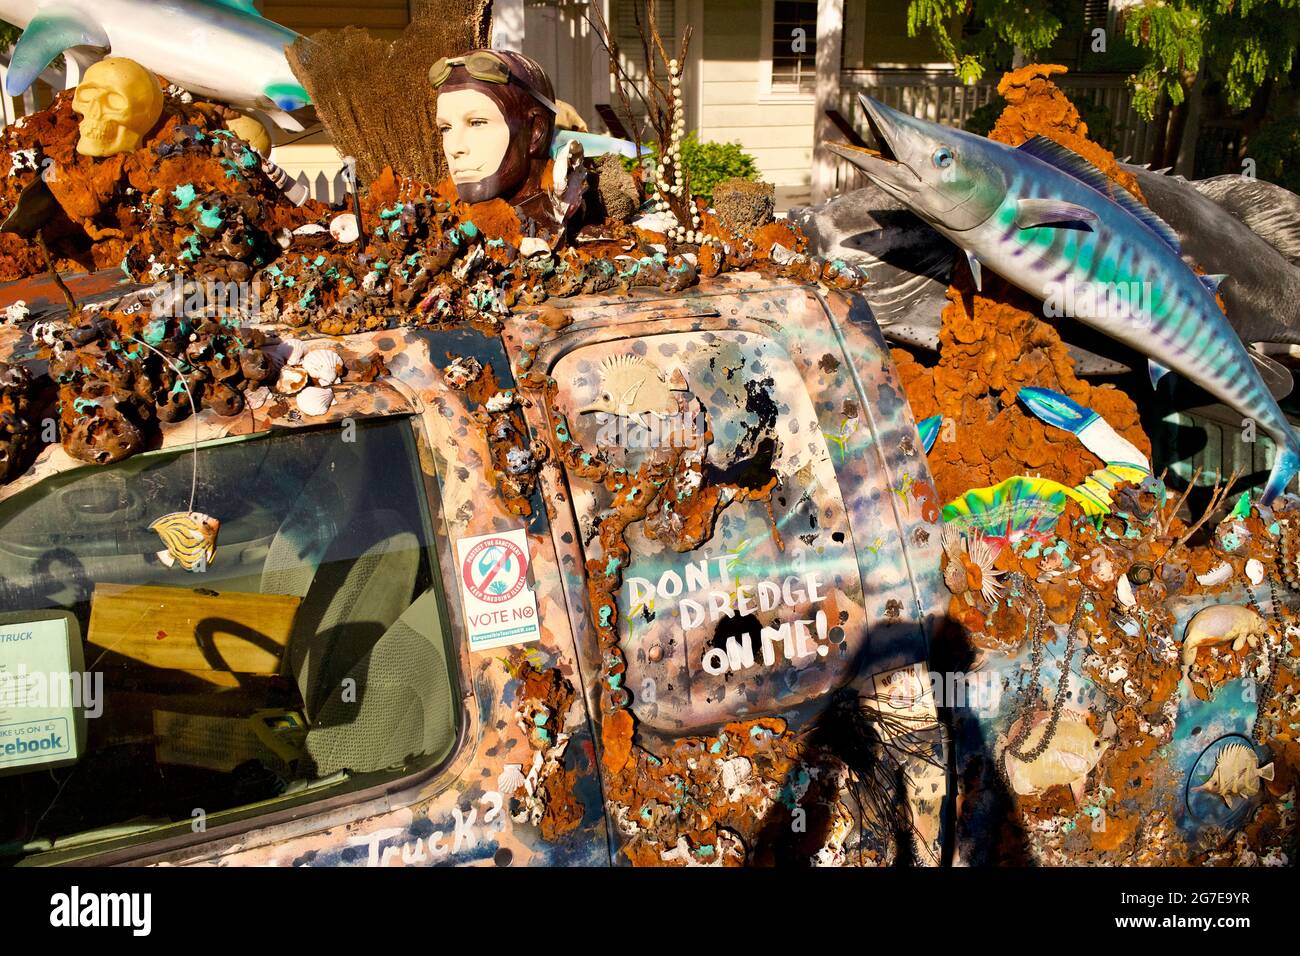 Crazy Custom “Rollin Reef’r” camion avec corail, coquillages, poissons, et autres objets attachés à lui. Key West, Floride, FL États-Unis. Destination de vacances sur l'île. Banque D'Images